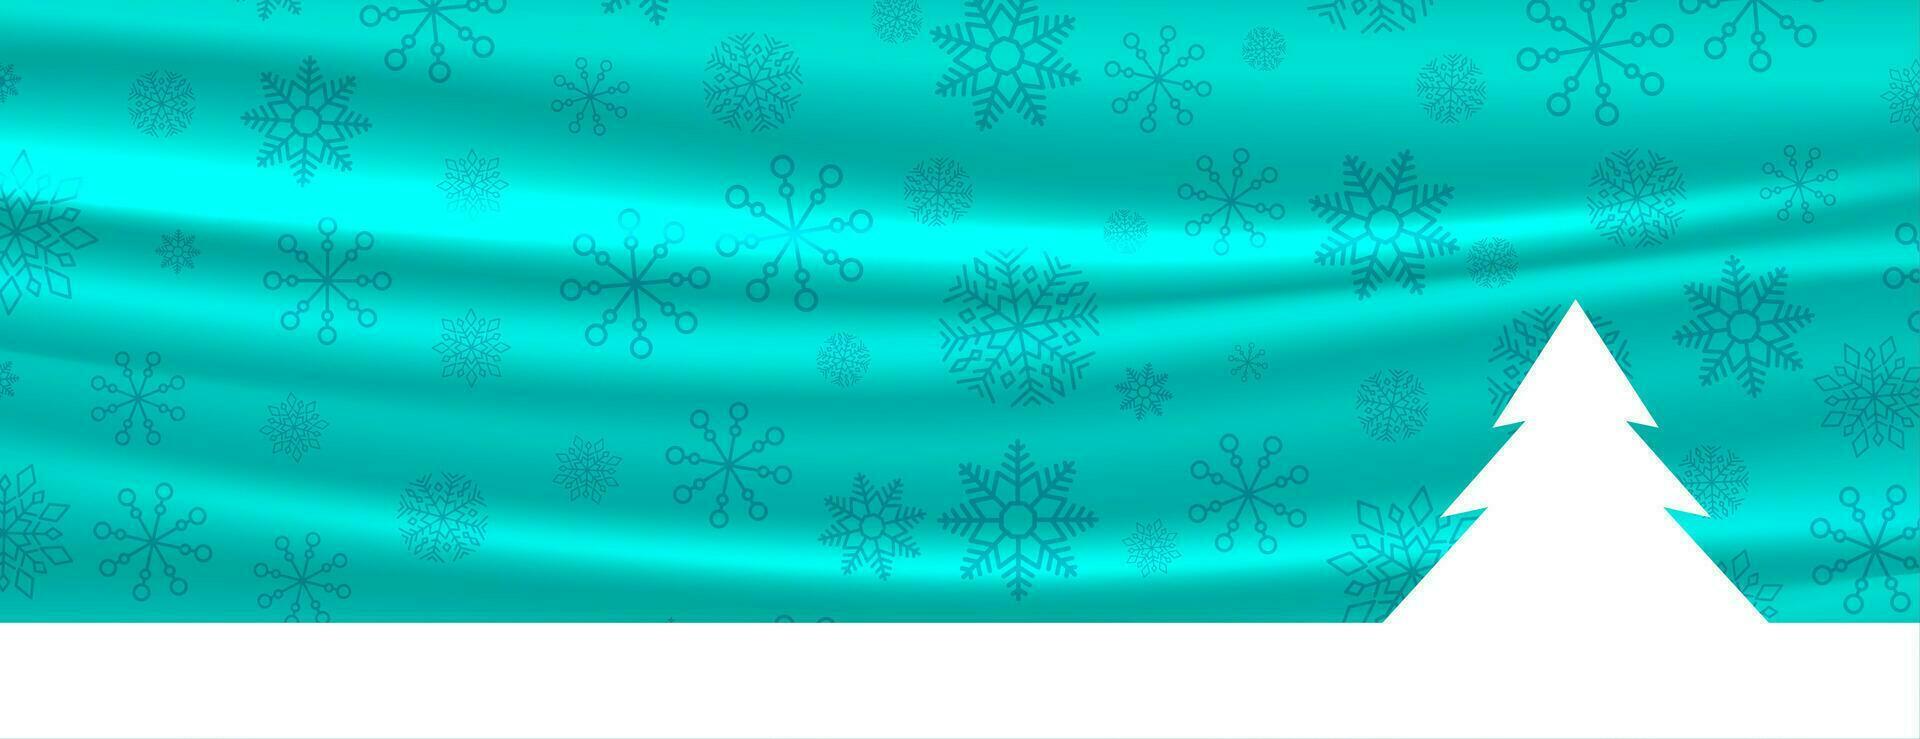 fröhlich Weihnachten Banner mit Baum und Schneeflocken Dekoration vektor